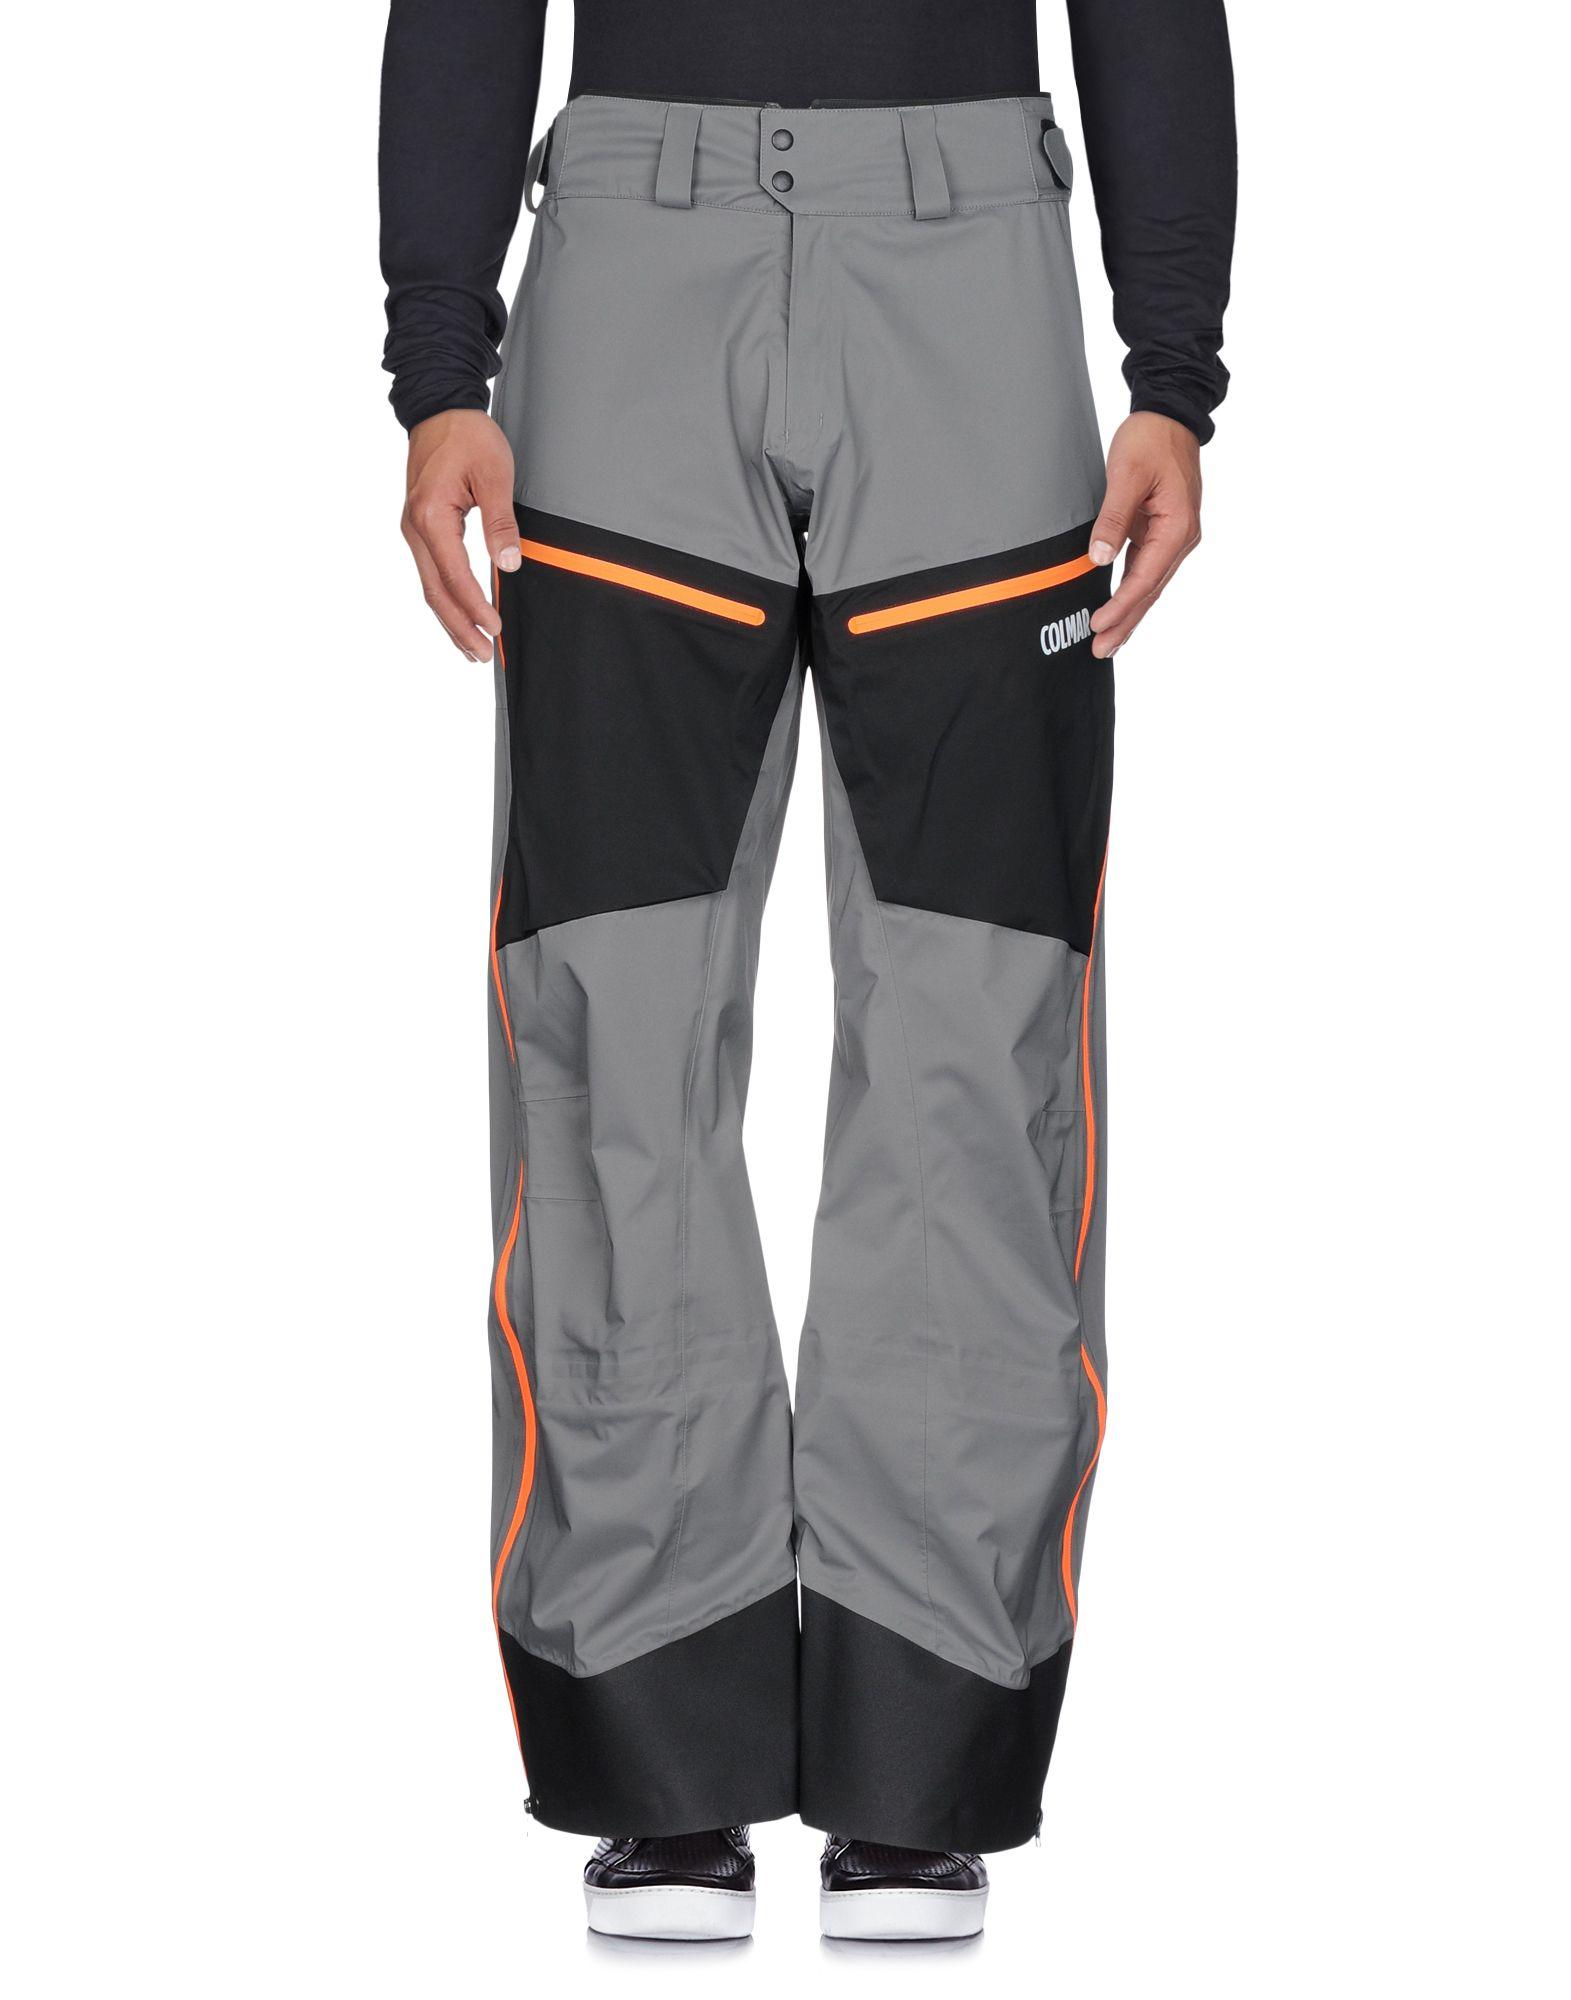 Colmar Ski Pants In Grey | ModeSens